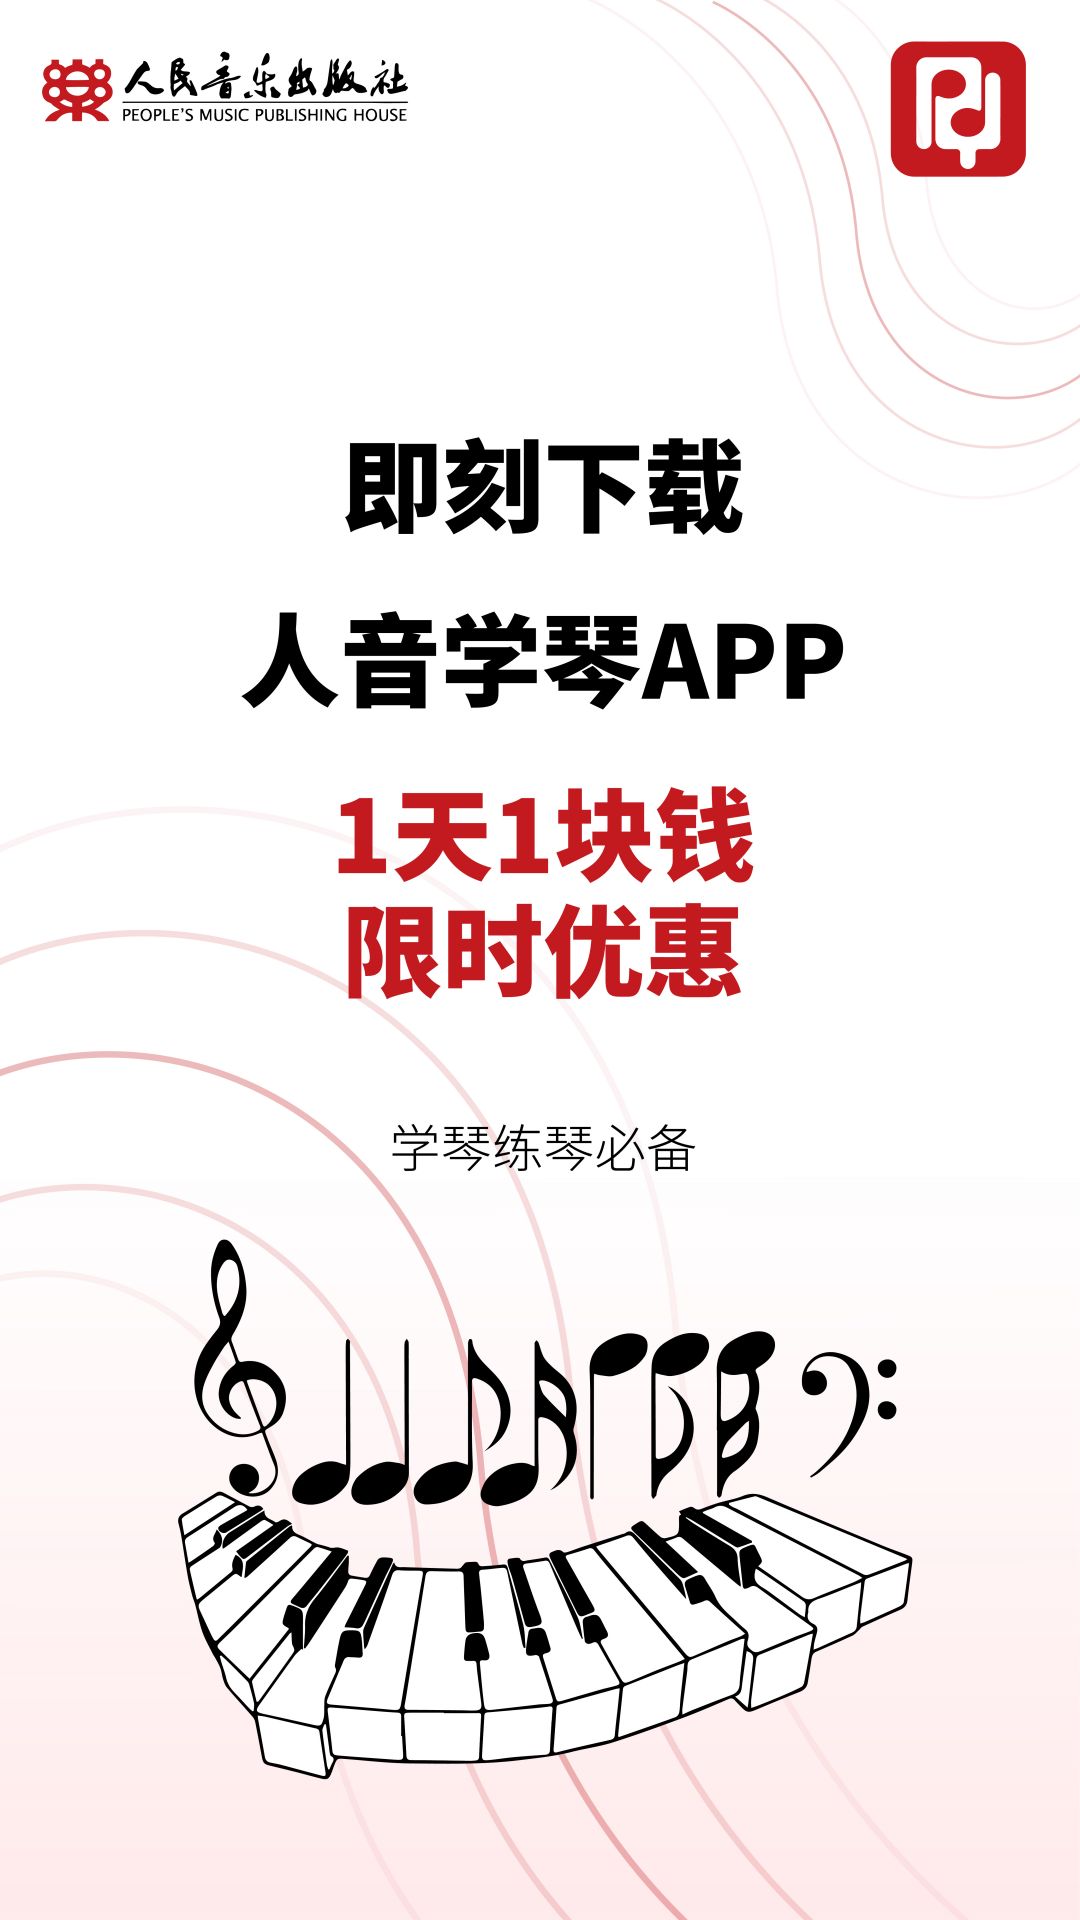 人音学琴APP下载,人音学琴APP最新版 v1.0.0